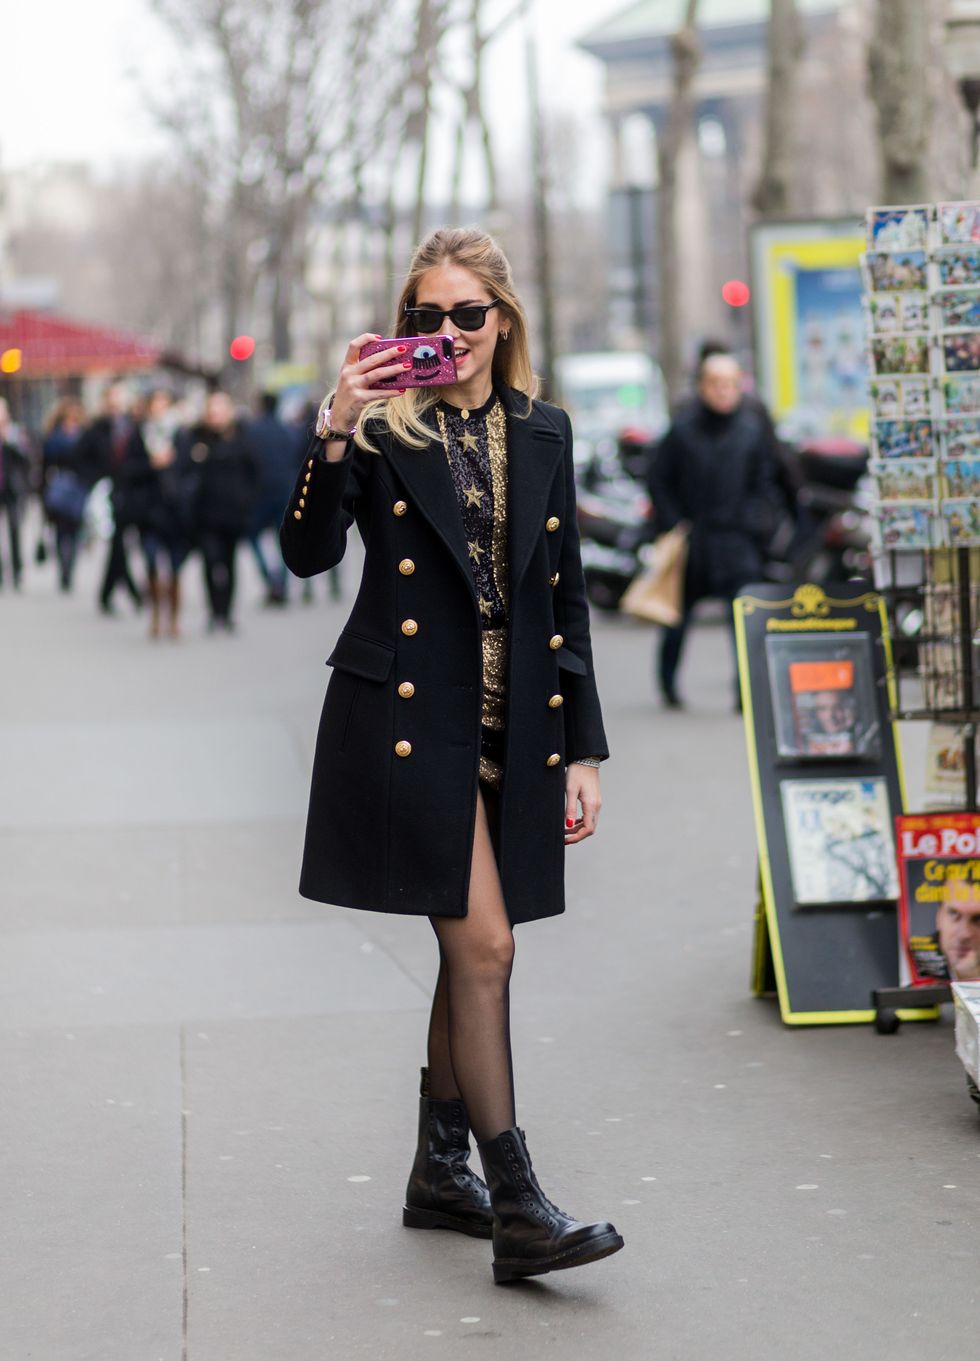 <p>Il 25 gennaio 2017 sempre a Parigi, poco dopo la sfilata di Elie Saab, ecco Chiara Ferragni mentre fotografa un paparazzo: sullo smartphone ha una cover firmata&nbsp;Chiara Ferragni Collection<span class="redactor-invisible-space">, la sua collezione di moda.</span></p>